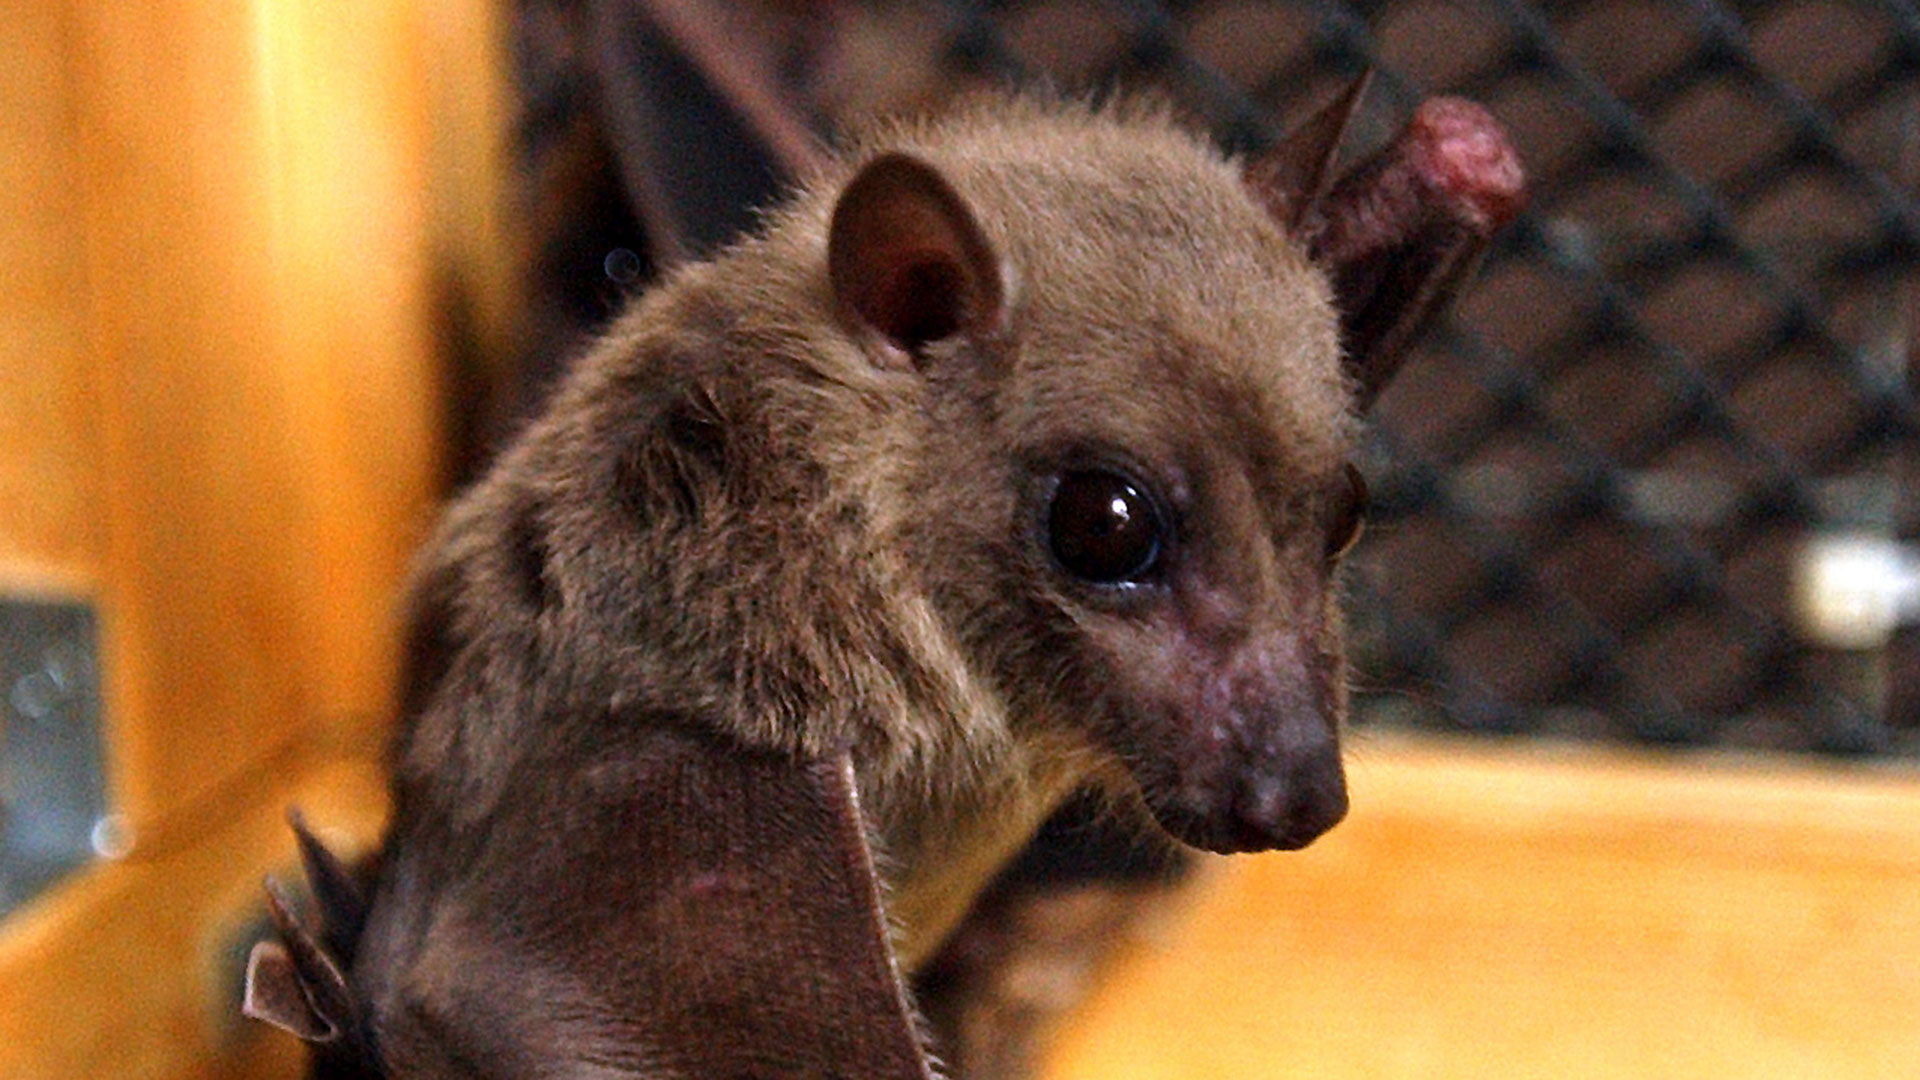 Se considera que los huéspedes naturales del virus de Marburgo son los murciélagos de la fruta Rousettus aegyptiacus, que luego lo transmiten a las personas. También hay transmisión entre personas/Archivo

